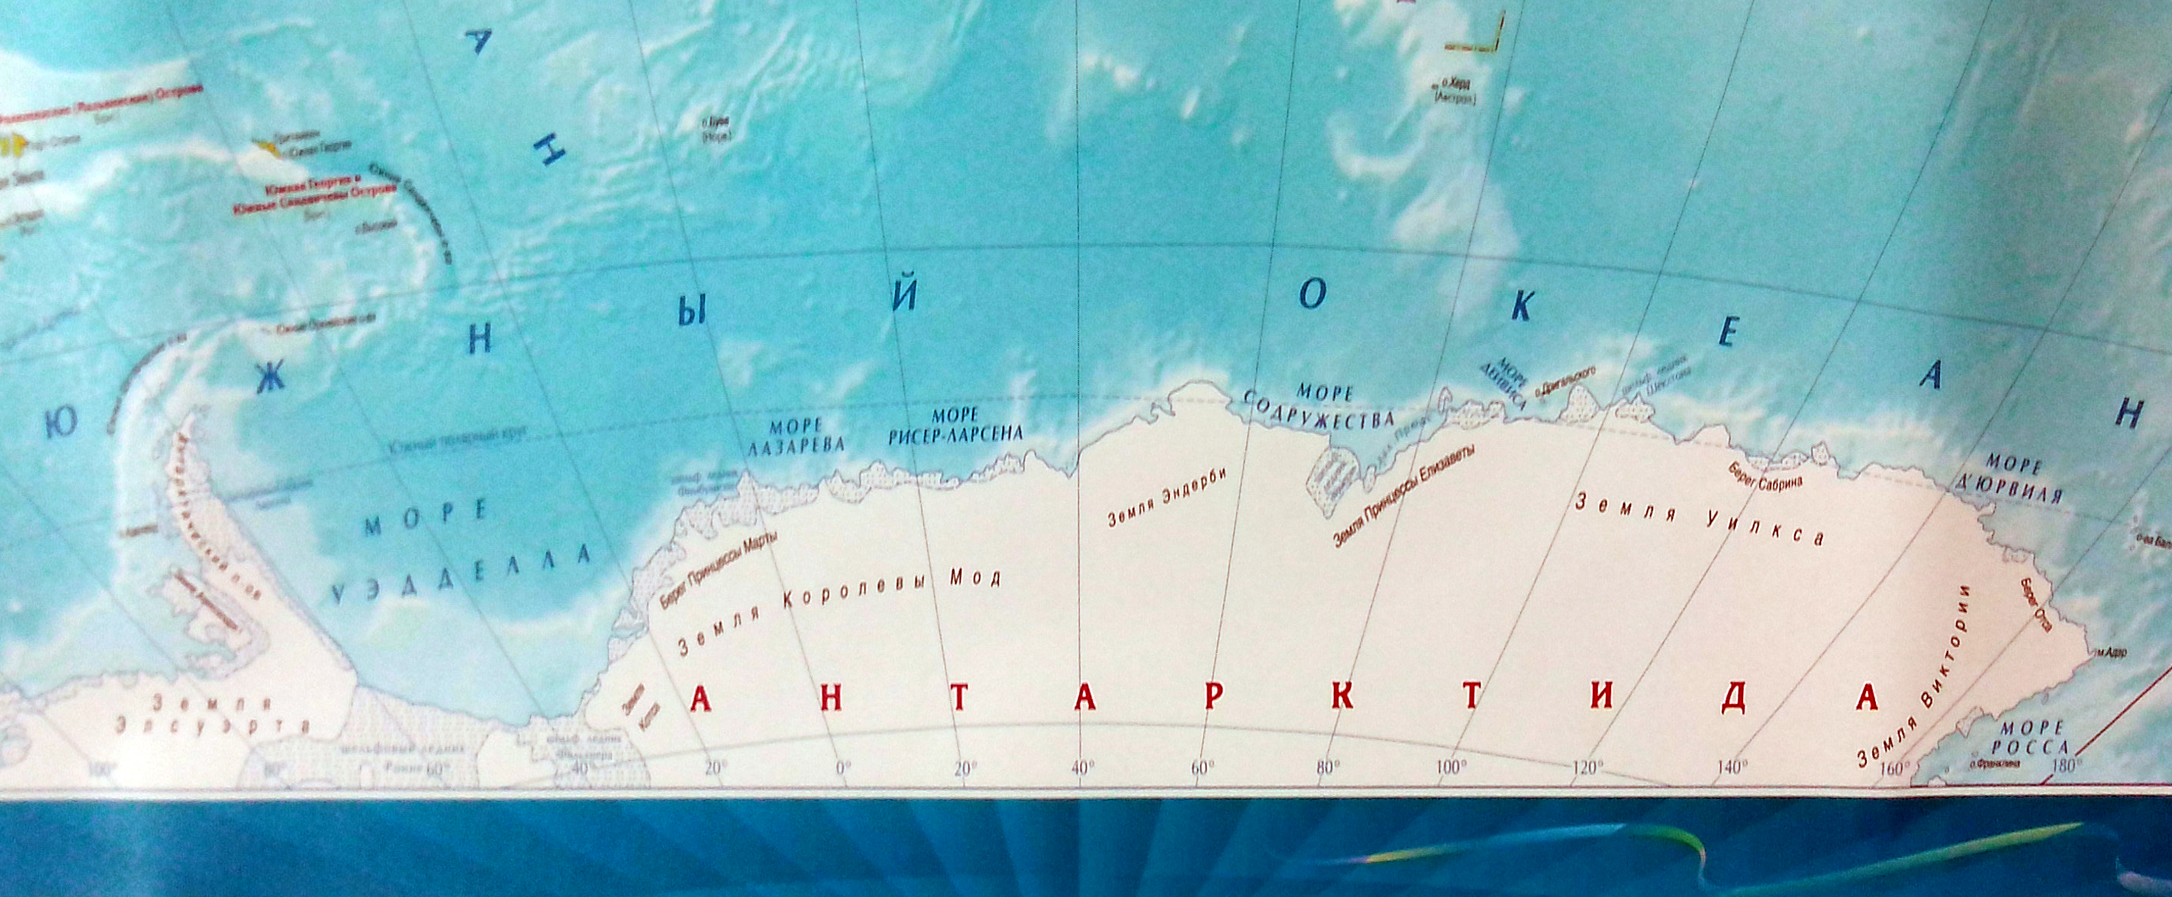 Назвали южным океаном. Южный океан на карте. Южный океан местоположение. Южный океан расположение. Границы Южного океана.